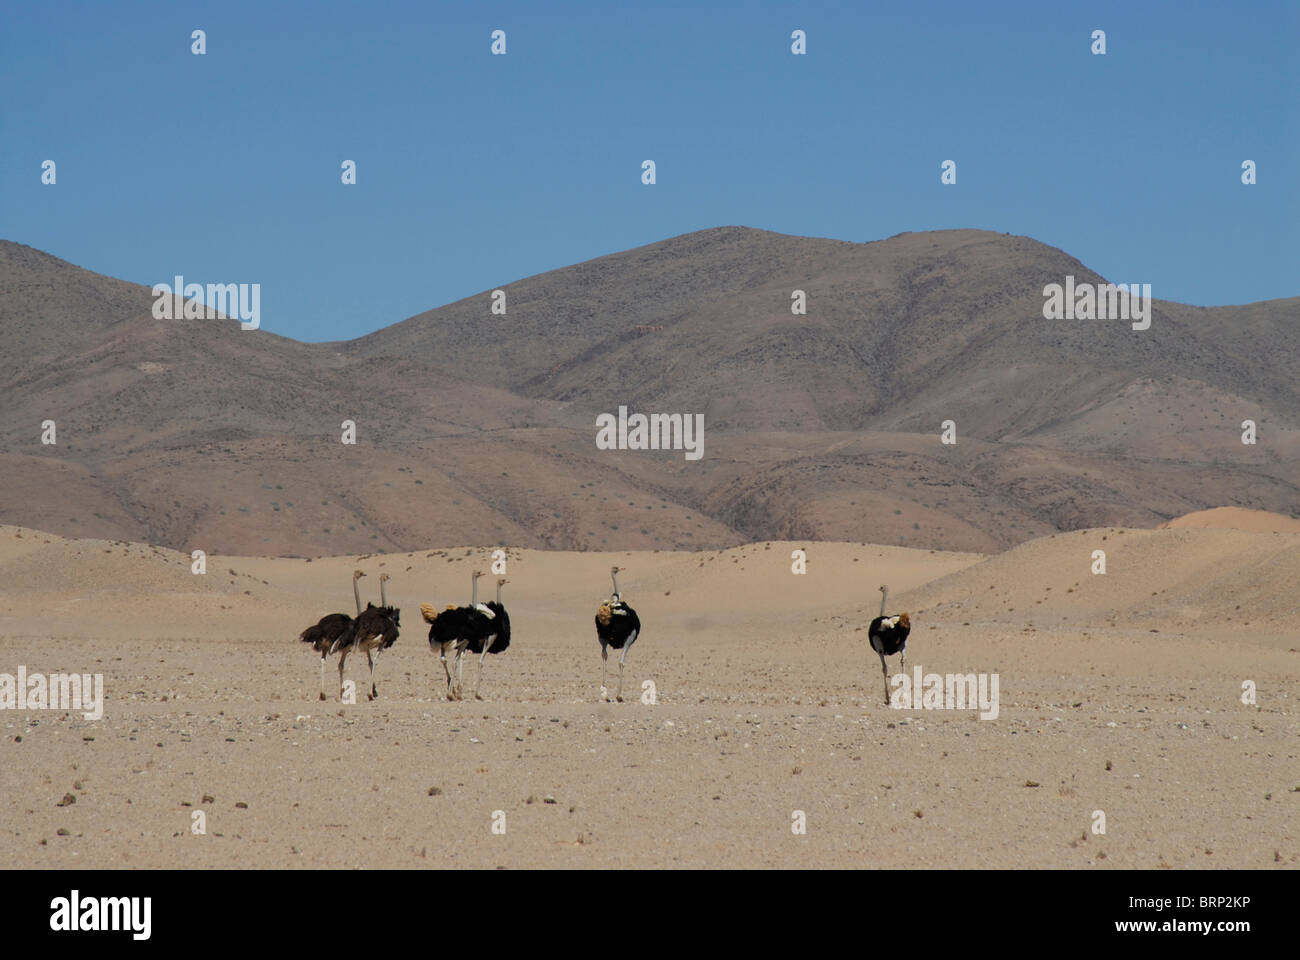 Groupe d'autruches dans un environnement désertique Banque D'Images